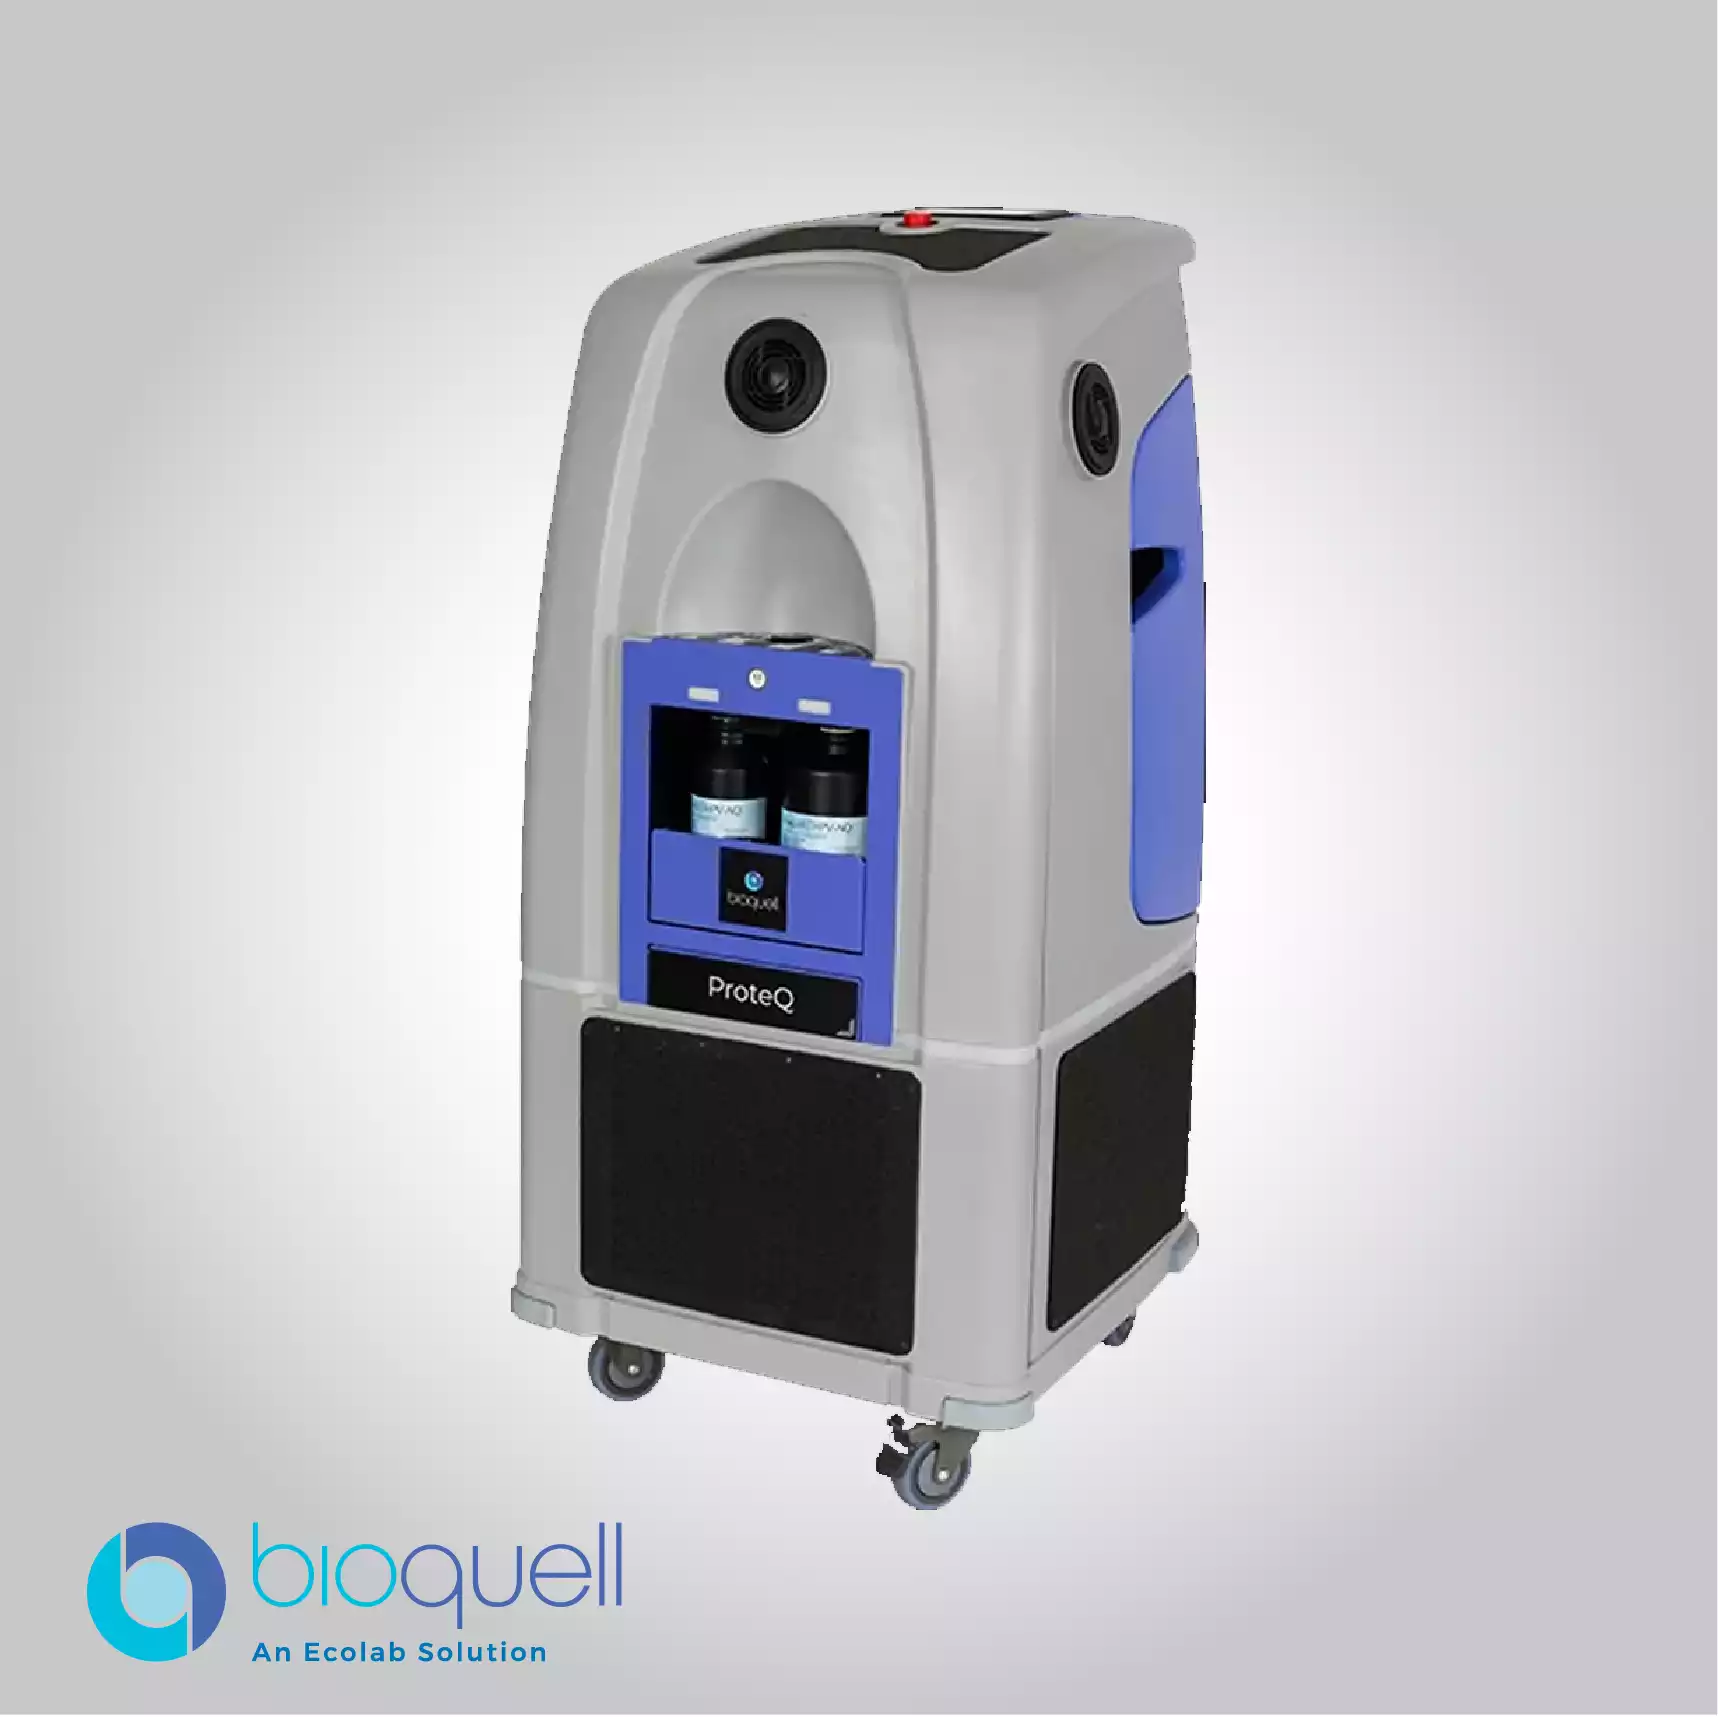 Bioquell Biodecontamination Systems